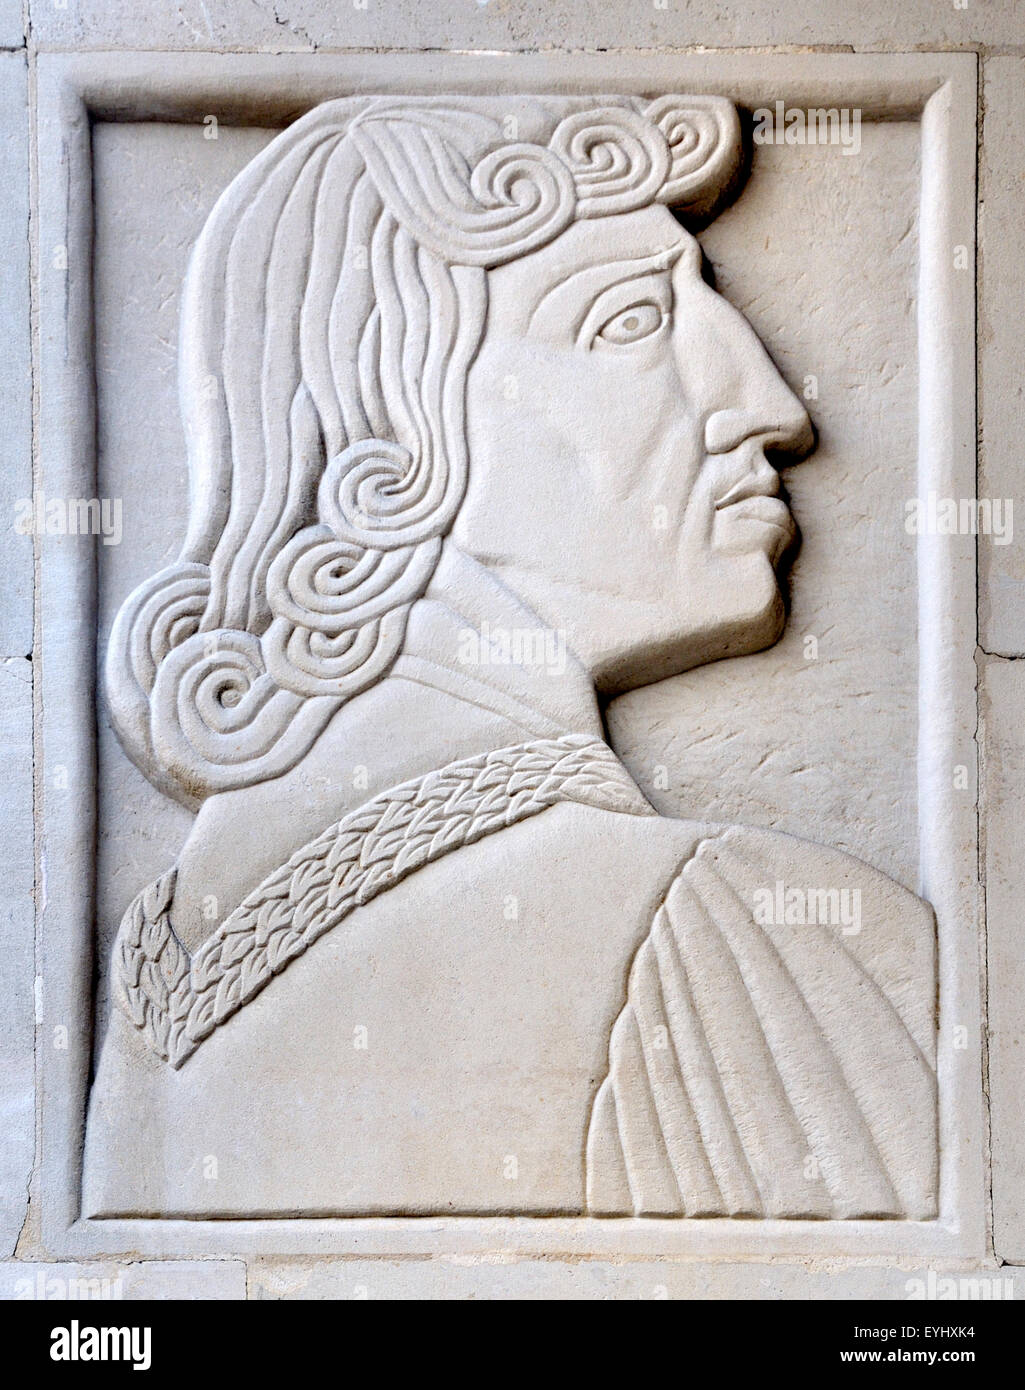 Londres, Inglaterra, Reino Unido. St Martin's School of Art, Charing Cross Rd. panel piedra tallada por el hombre del Renacimiento: Ryland Adolfine Foto de stock